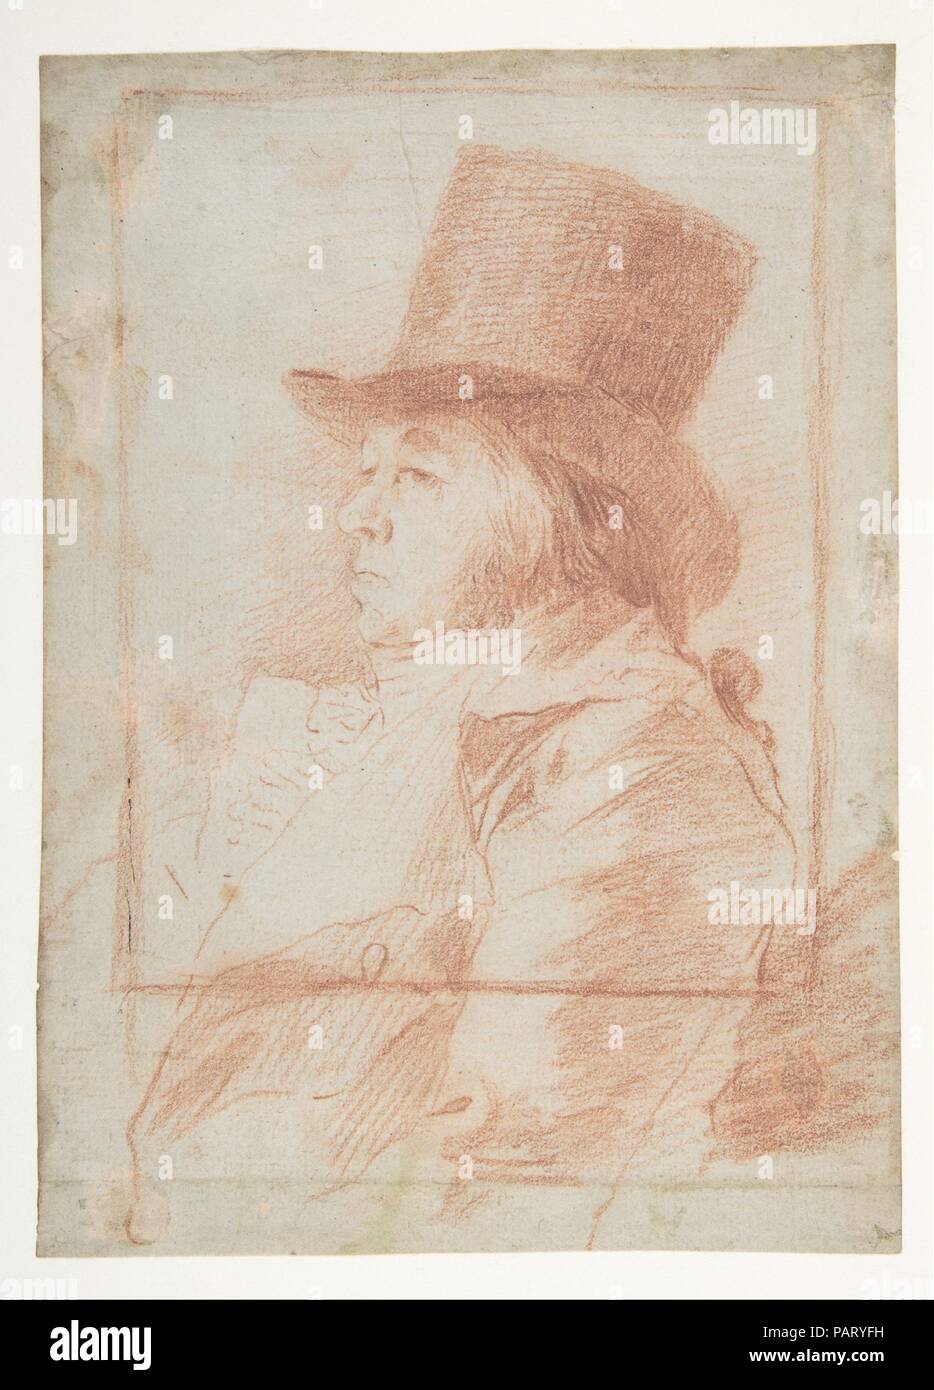 Autorretrato; Goya llevaba un sombrero superior hacia la izquierda dentro de un marco dibujado (recto); dos estudios de su rostro (verso). Artista: Goya (Francisco de Goya y Lucientes) (español, Fuendetodos 1746-1828 Burdeos). Dimensiones: Hoja: 7 13/16 x 5 5/8". (19,8 × 14,3 cm). Fecha: ca. 1797-98. Este es un dibujo preparatorio para el cuál ahora es la primera impresión en su serie Los caprichos (publicado en 1799). Museo: Museo Metropolitano de Arte, Nueva York, Estados Unidos. Foto de stock